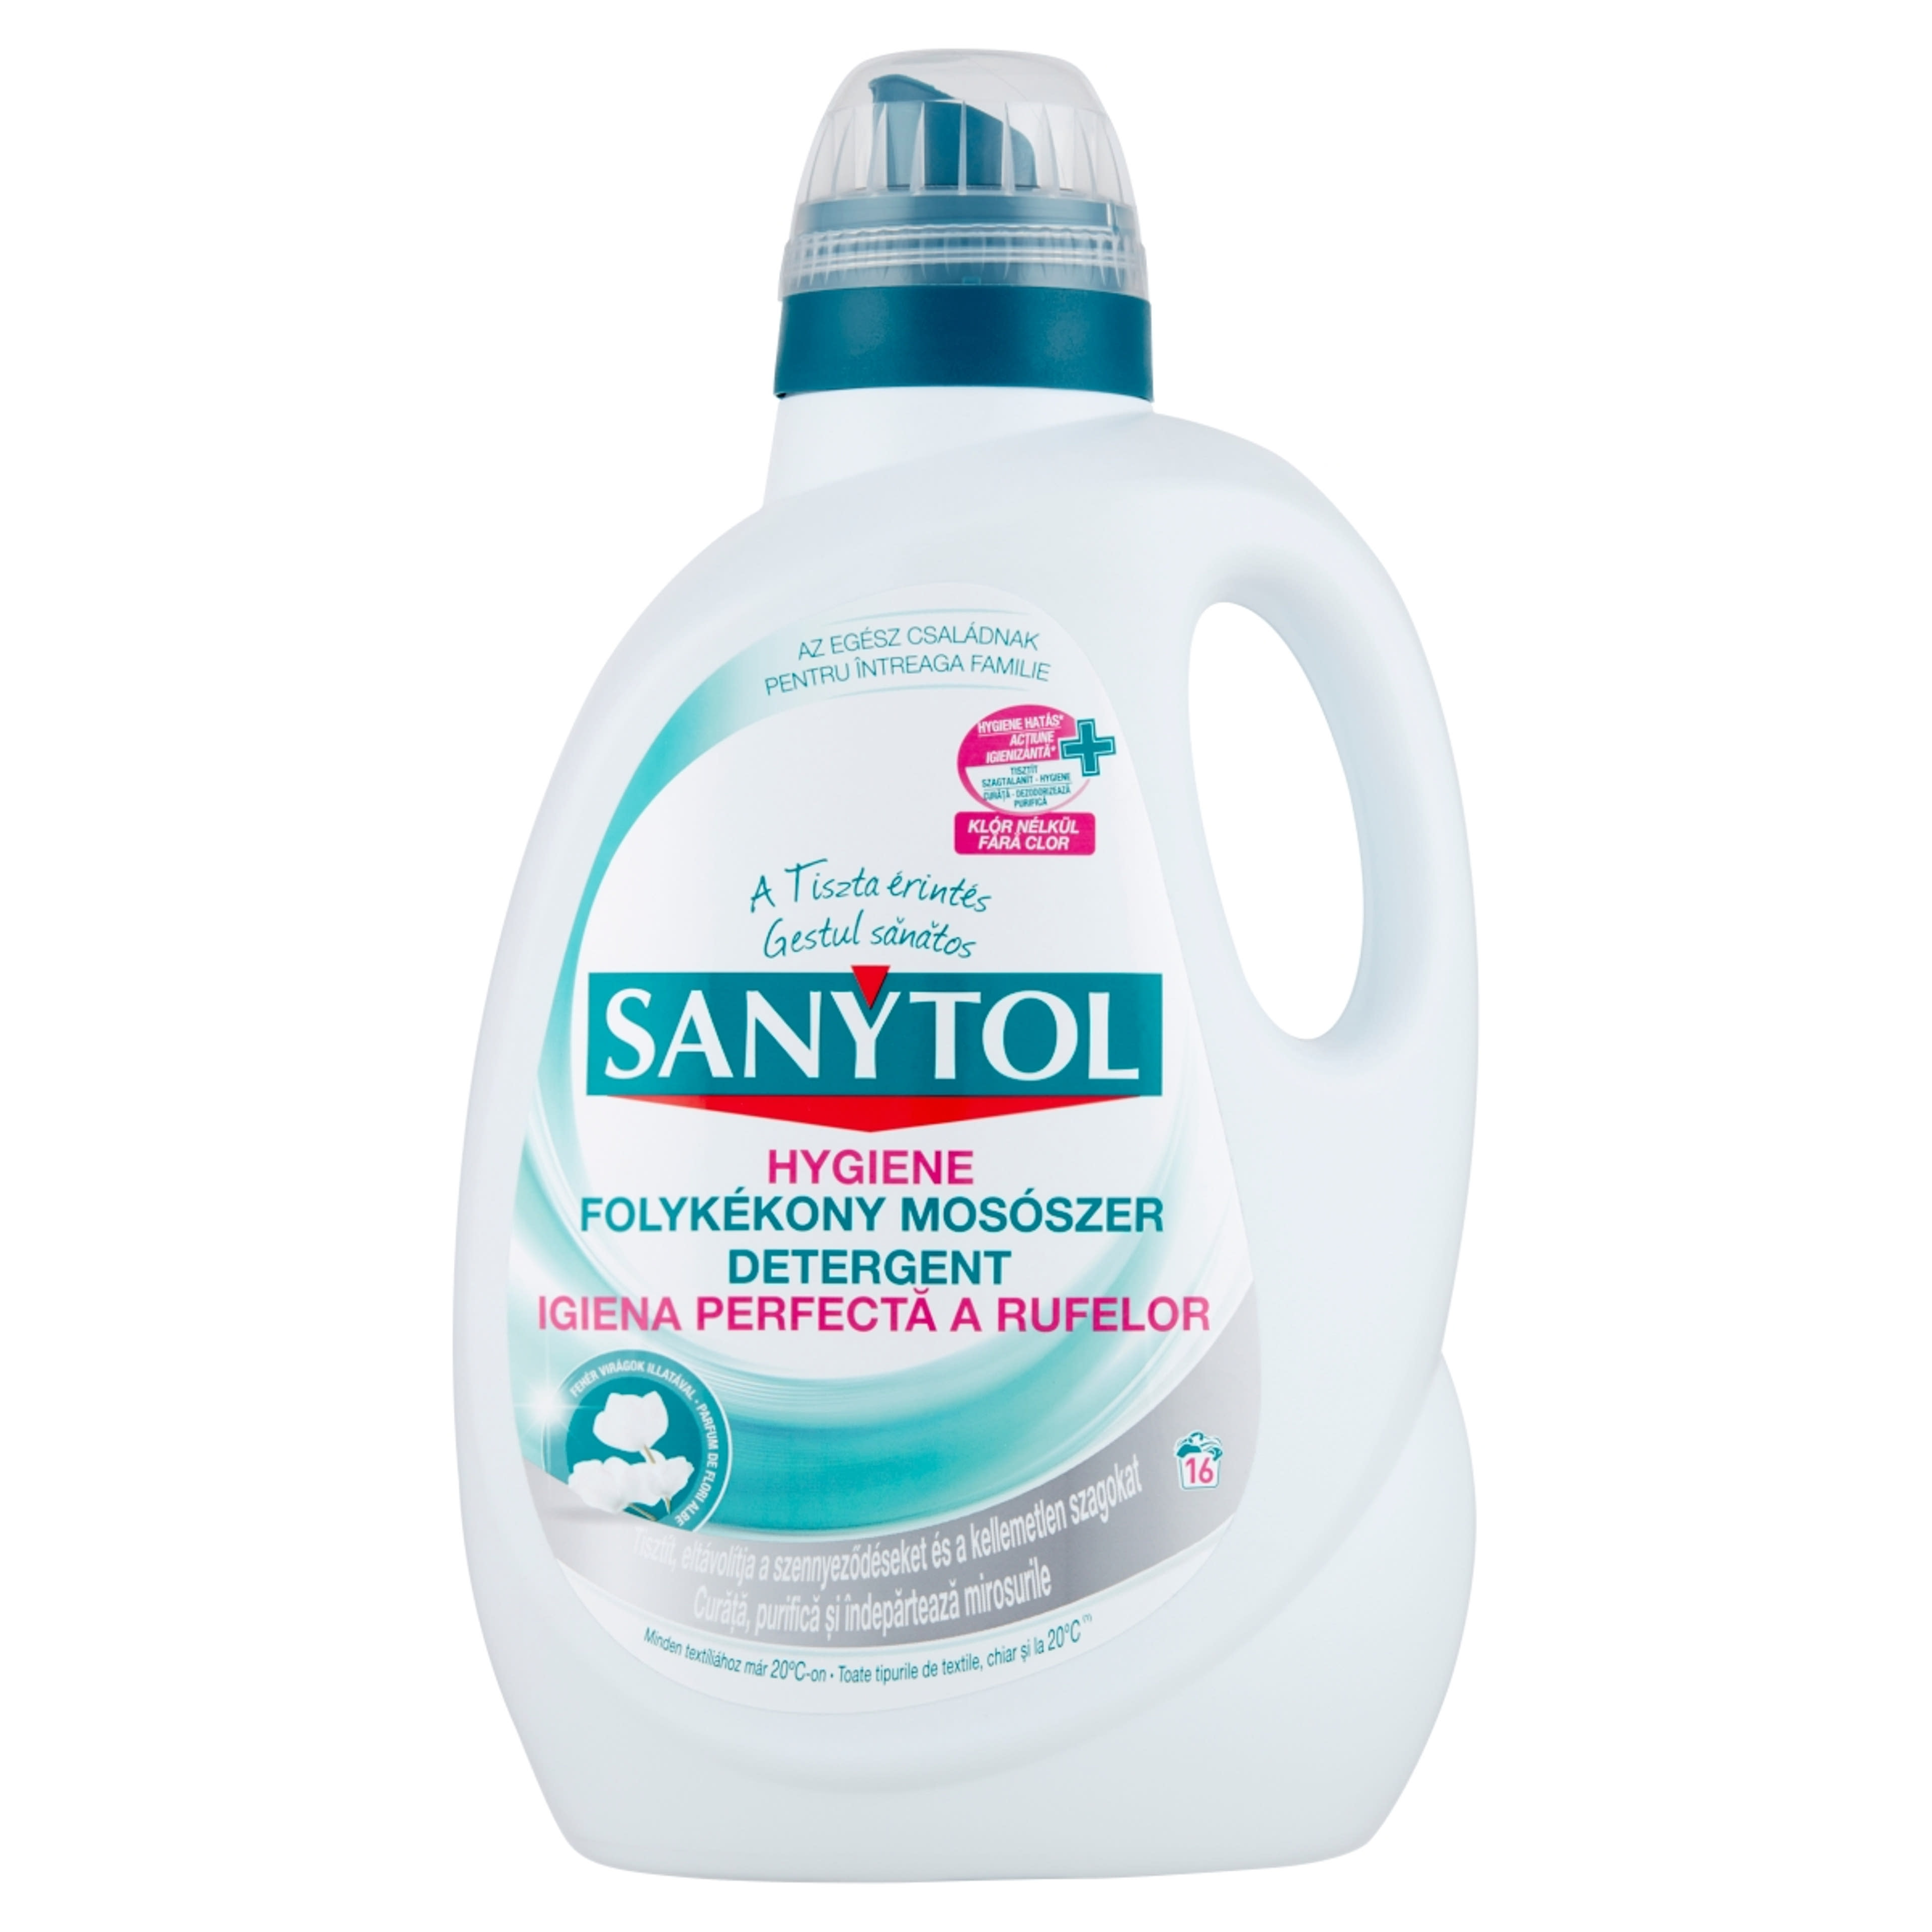 Sanytol hygiene folyékony mosószer - 1650 ml-1